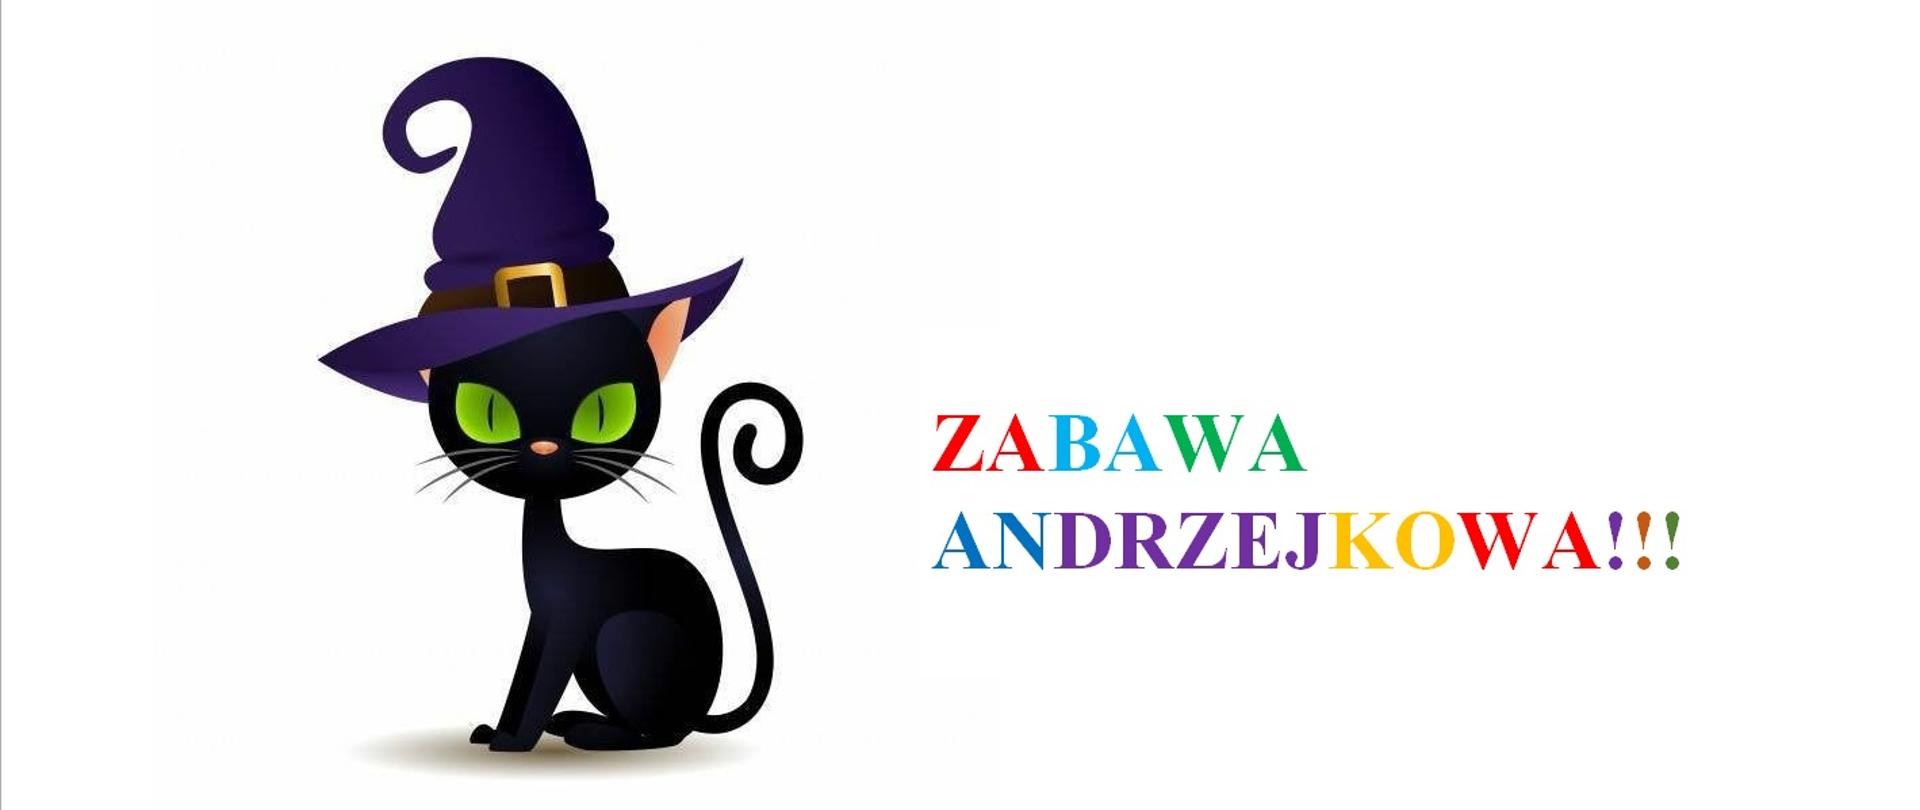 Zdjęcie przedstawia czarnego kota we fioletowym kapeluszu na głowie oraz kolorowy napis Zabawa Andrzejkowa.